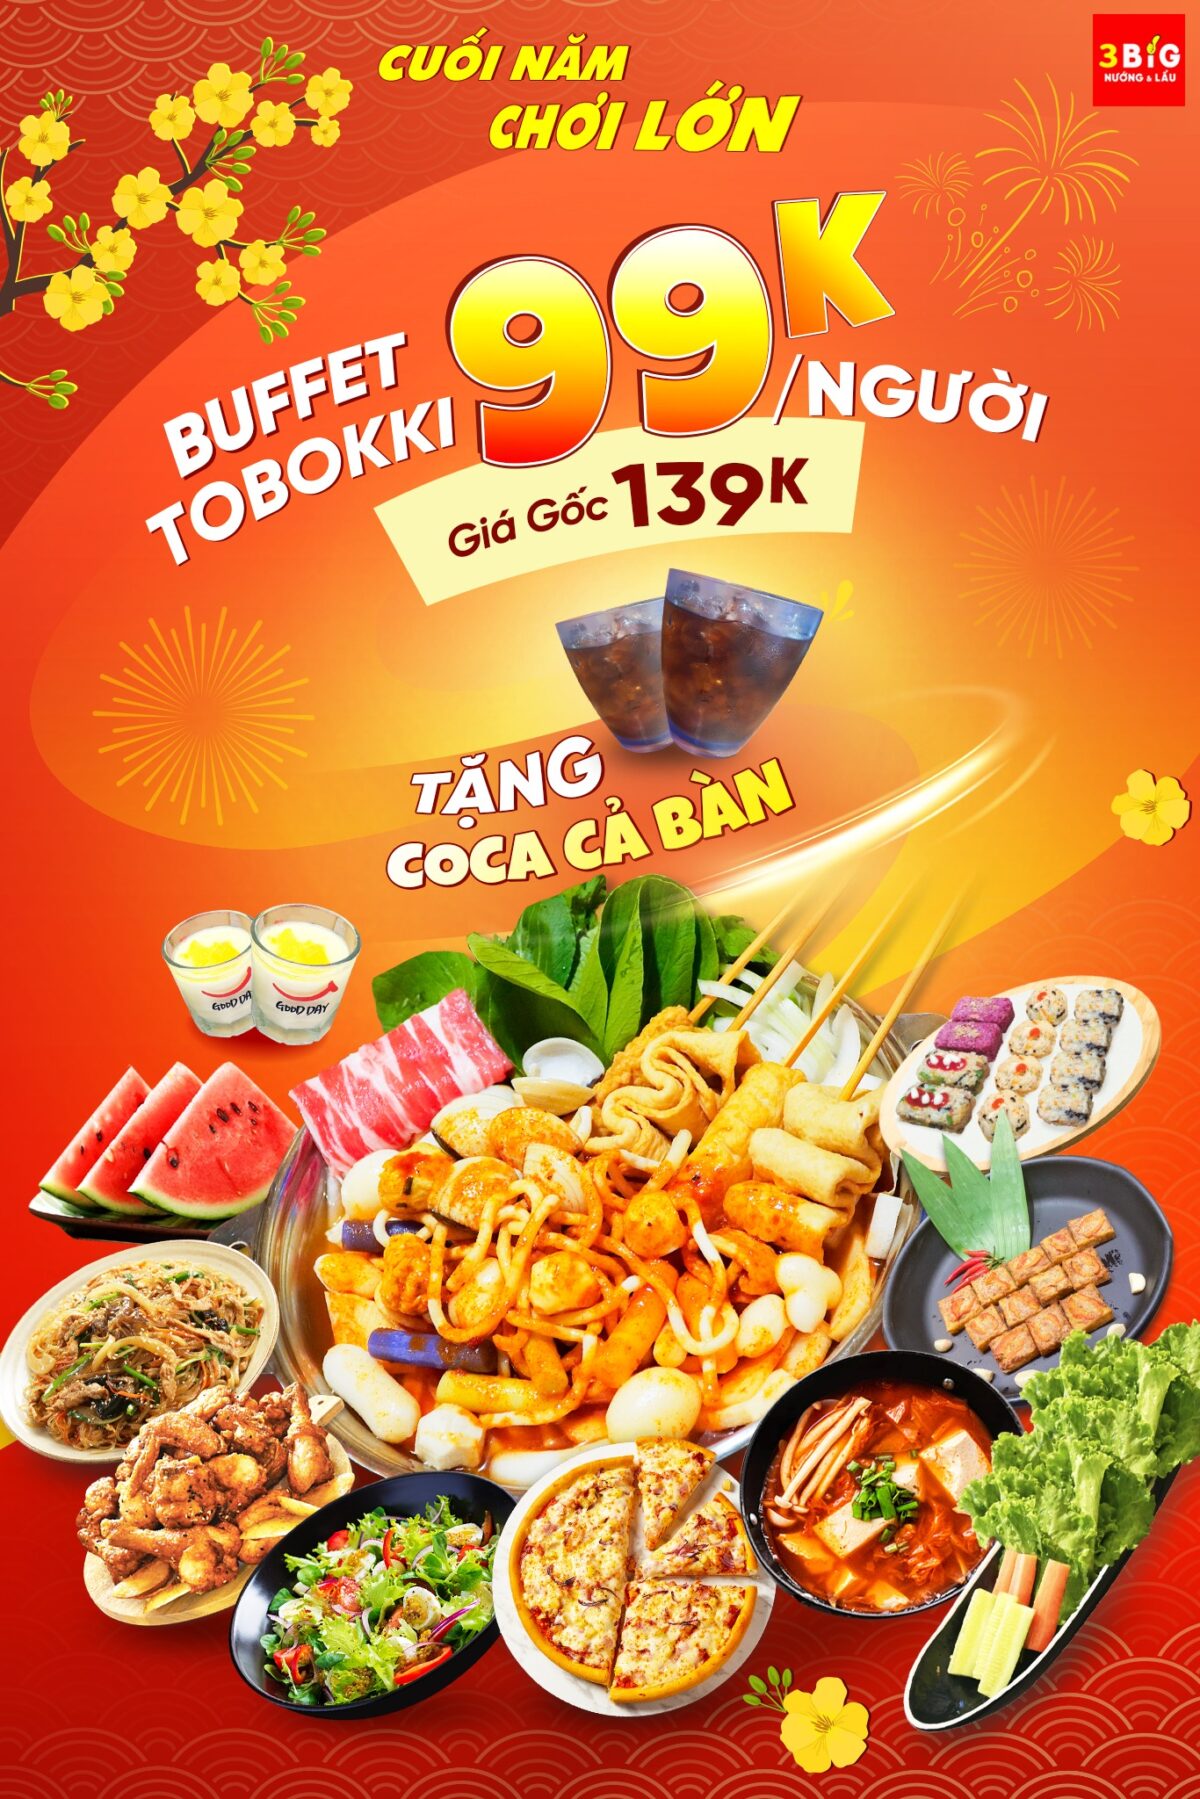 buffet tobokki #99k ngƯỜi cÒn miỄn phÍ coca cuỐi nĂm 3 big chƠi lỚn